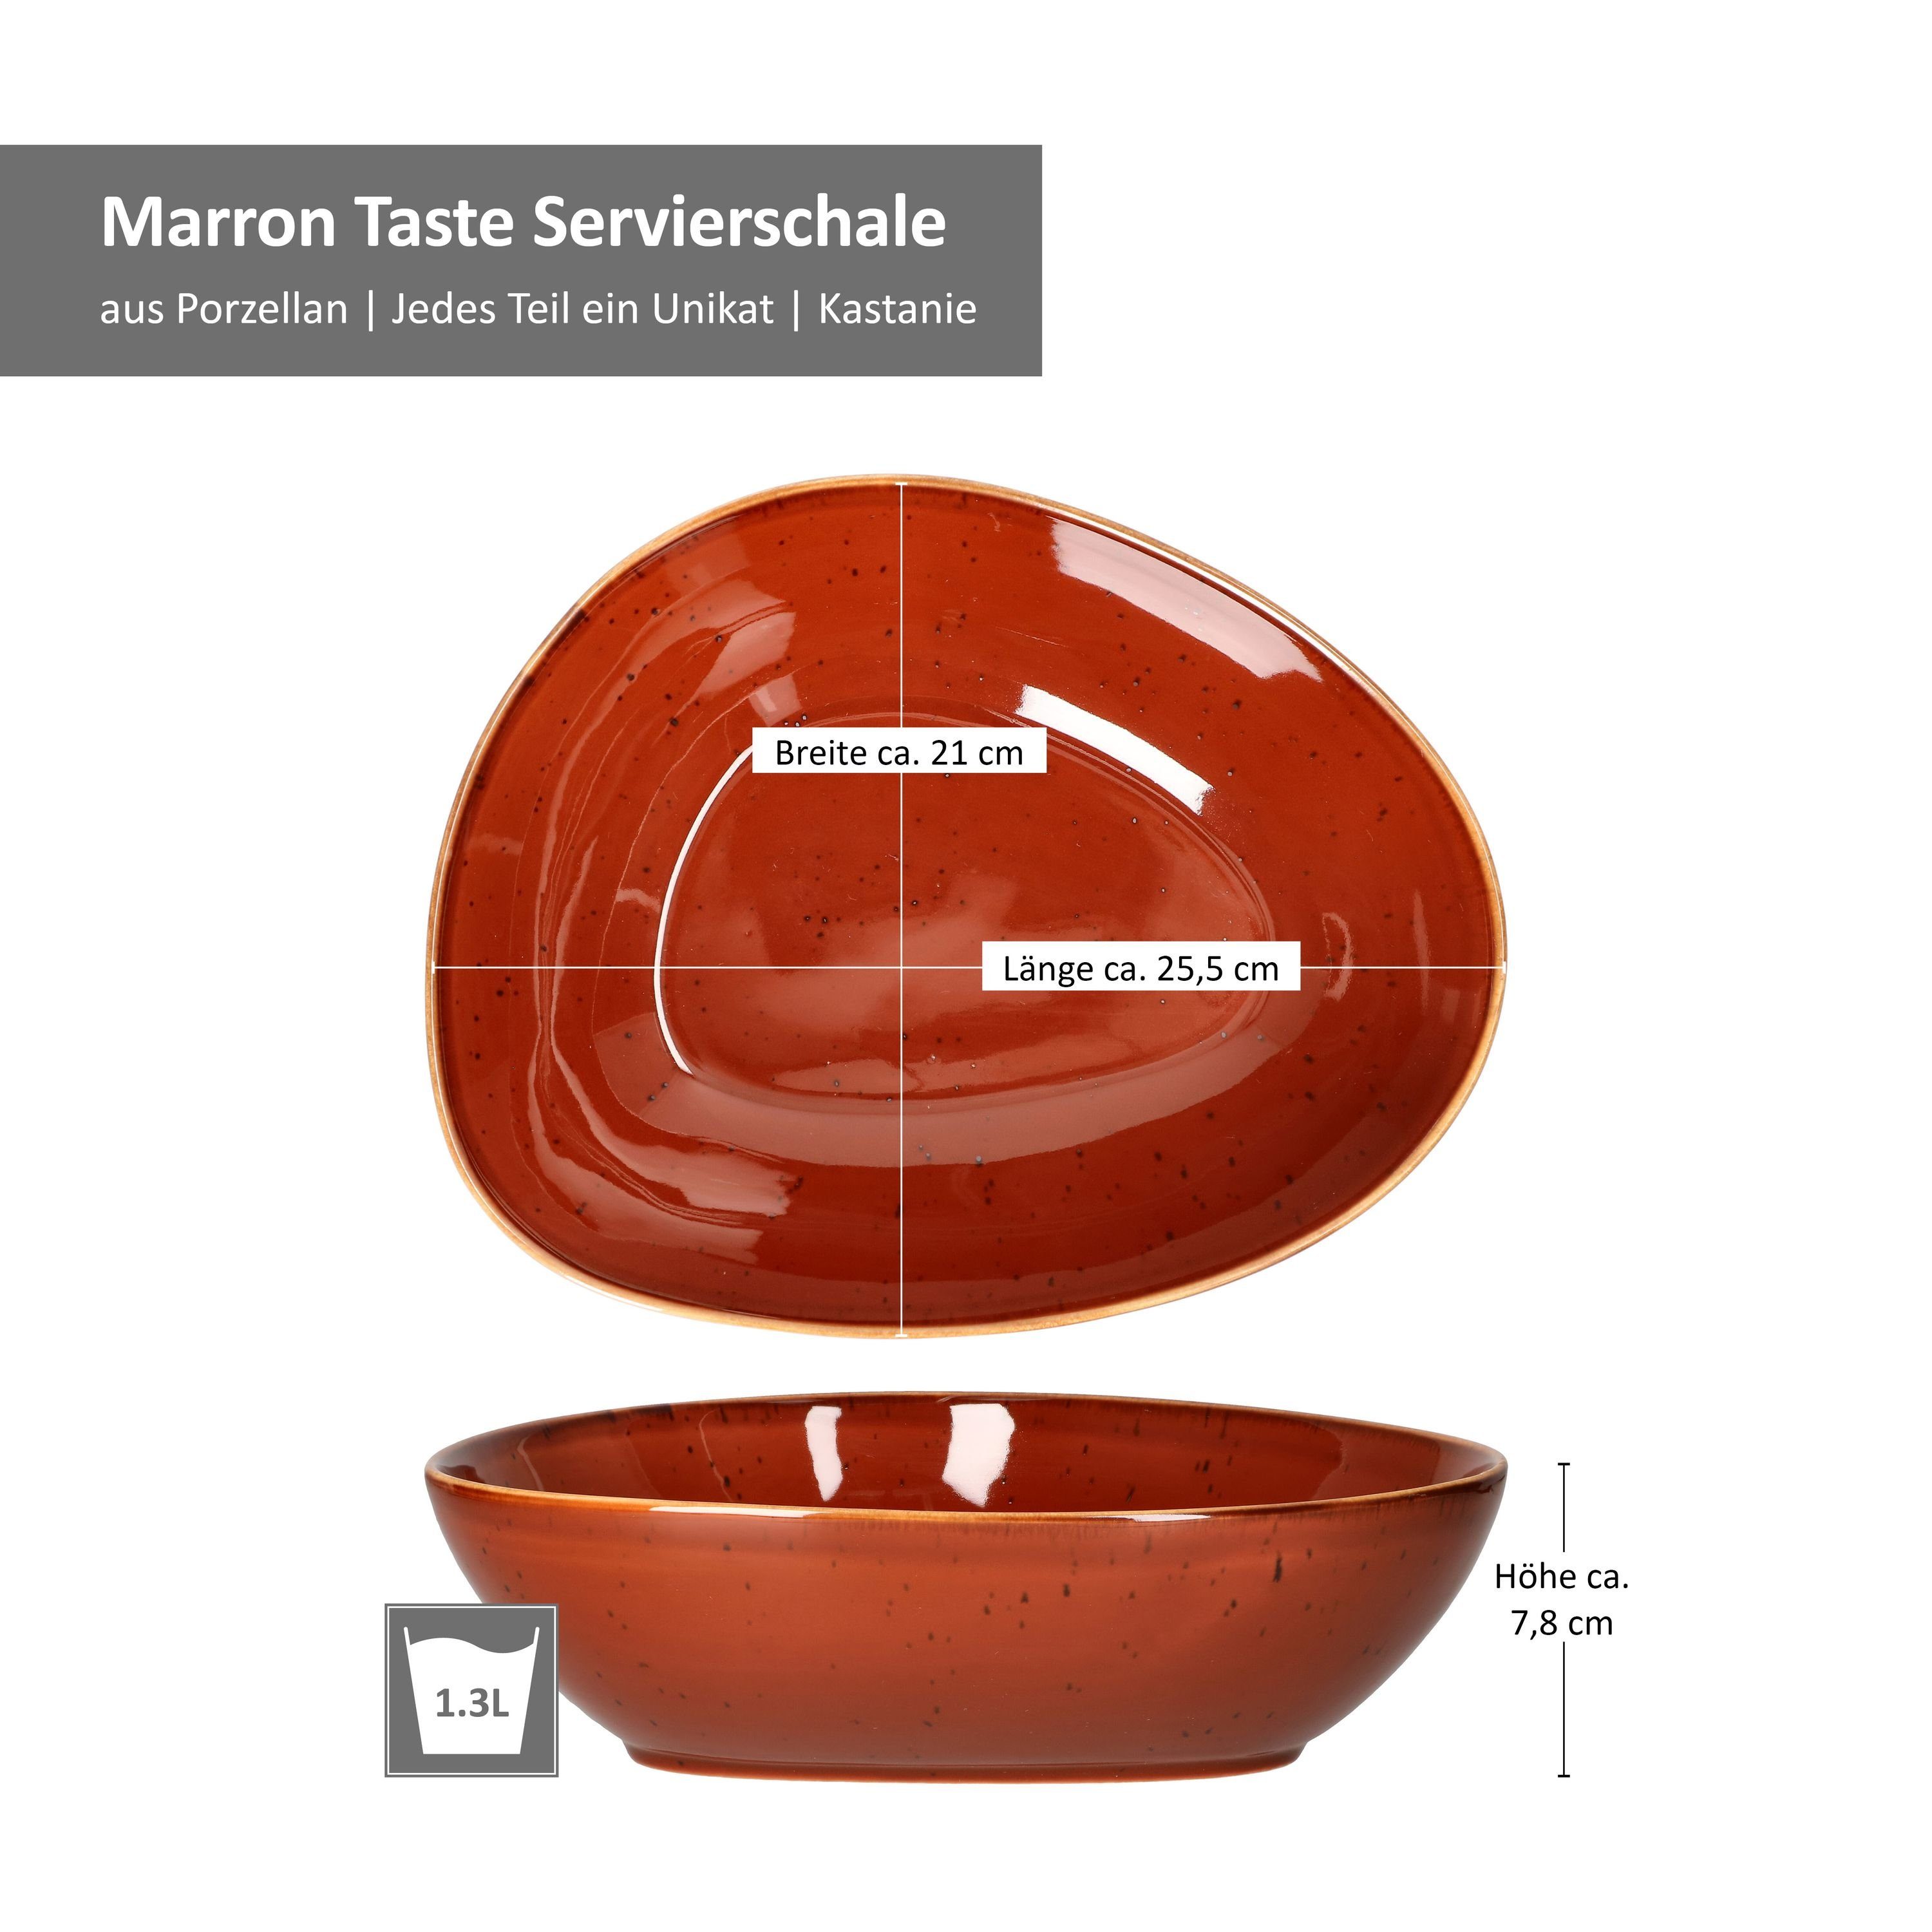 MamboCat Porzellan Servierschale Taste Marron 2er - Set Servierschale 211559,